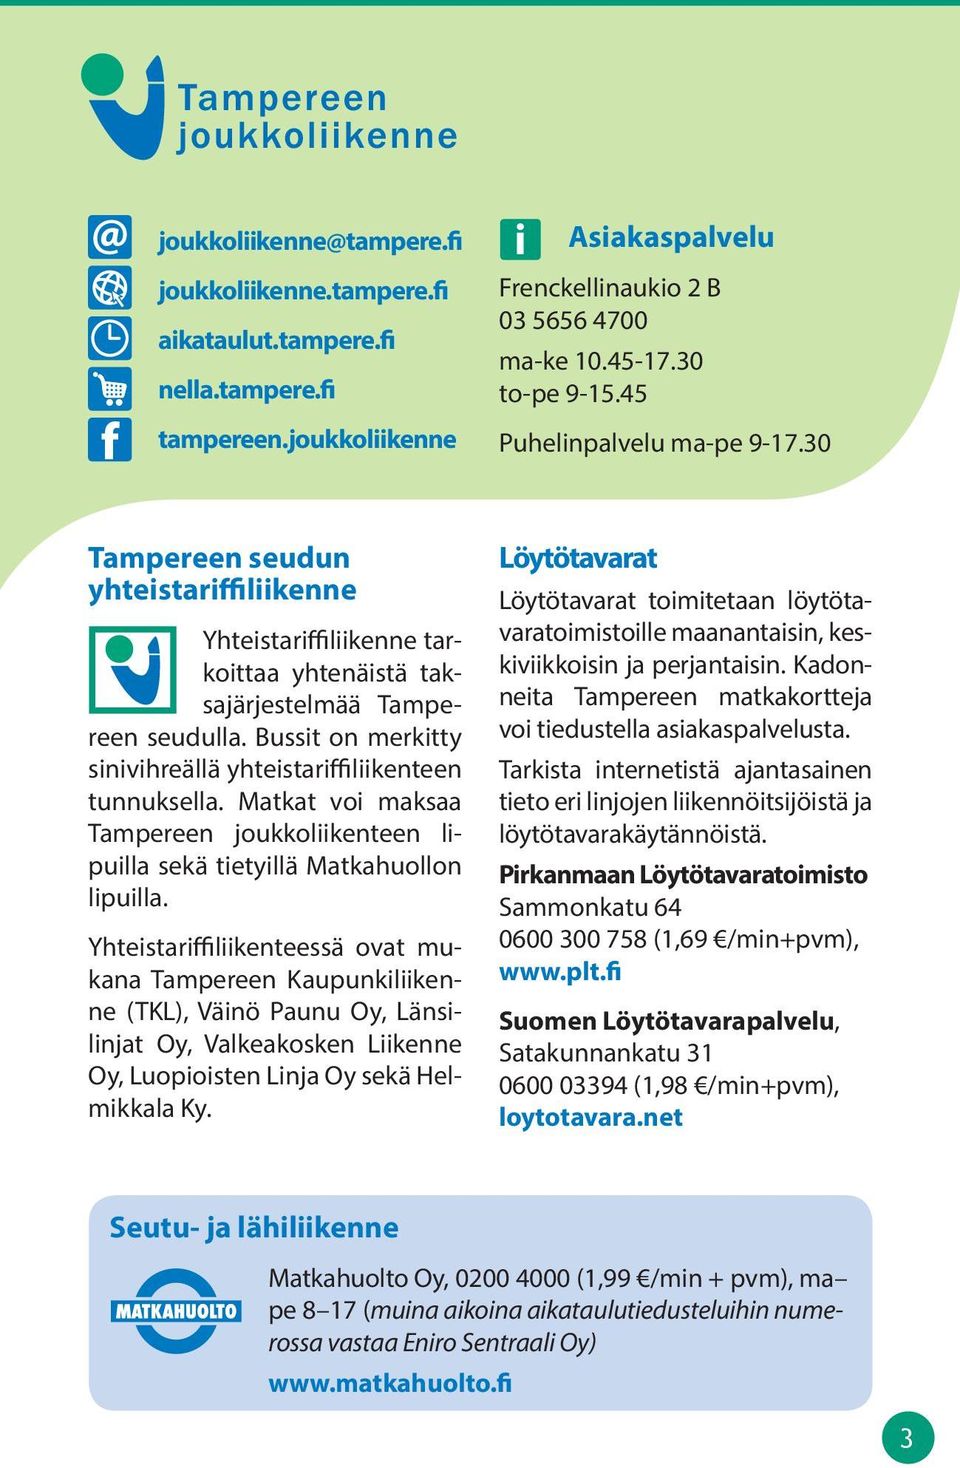 ussit on merkitty sinivihreällä yhteistariffiliikenteen tunnuksella. Matkat voi maksaa Tampereen joukkoliikenteen lipuilla sekä tietyillä Matkahuollon lipuilla.